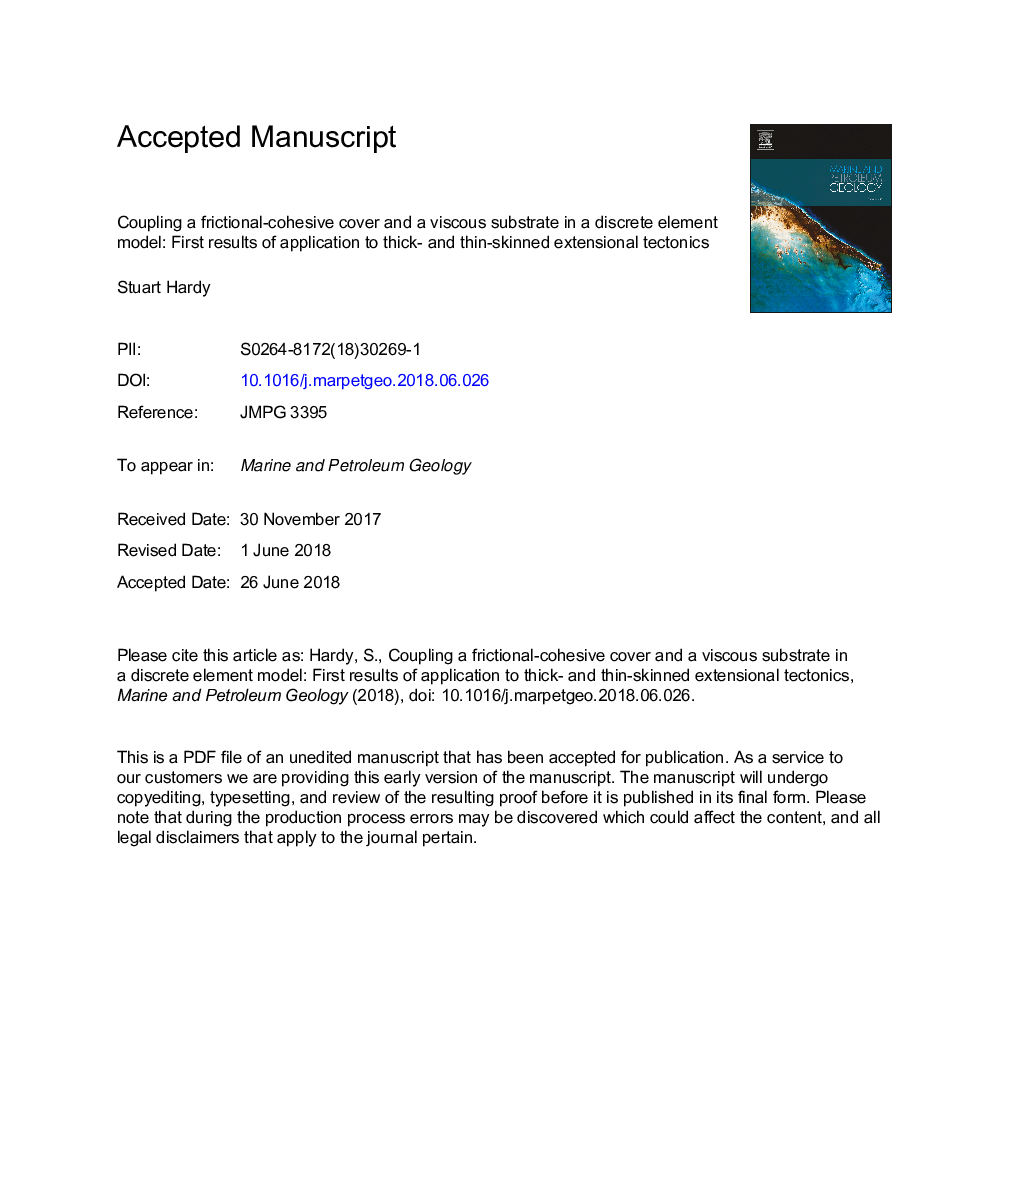 اتصال یک پوشش اصطکاک-مخروطی و یک سوبسترا چسبناک در یک مدل عنصر گسسته: نتایج اولیه استفاده از تکتونیک های فشرده ضخیم و نازک پوست